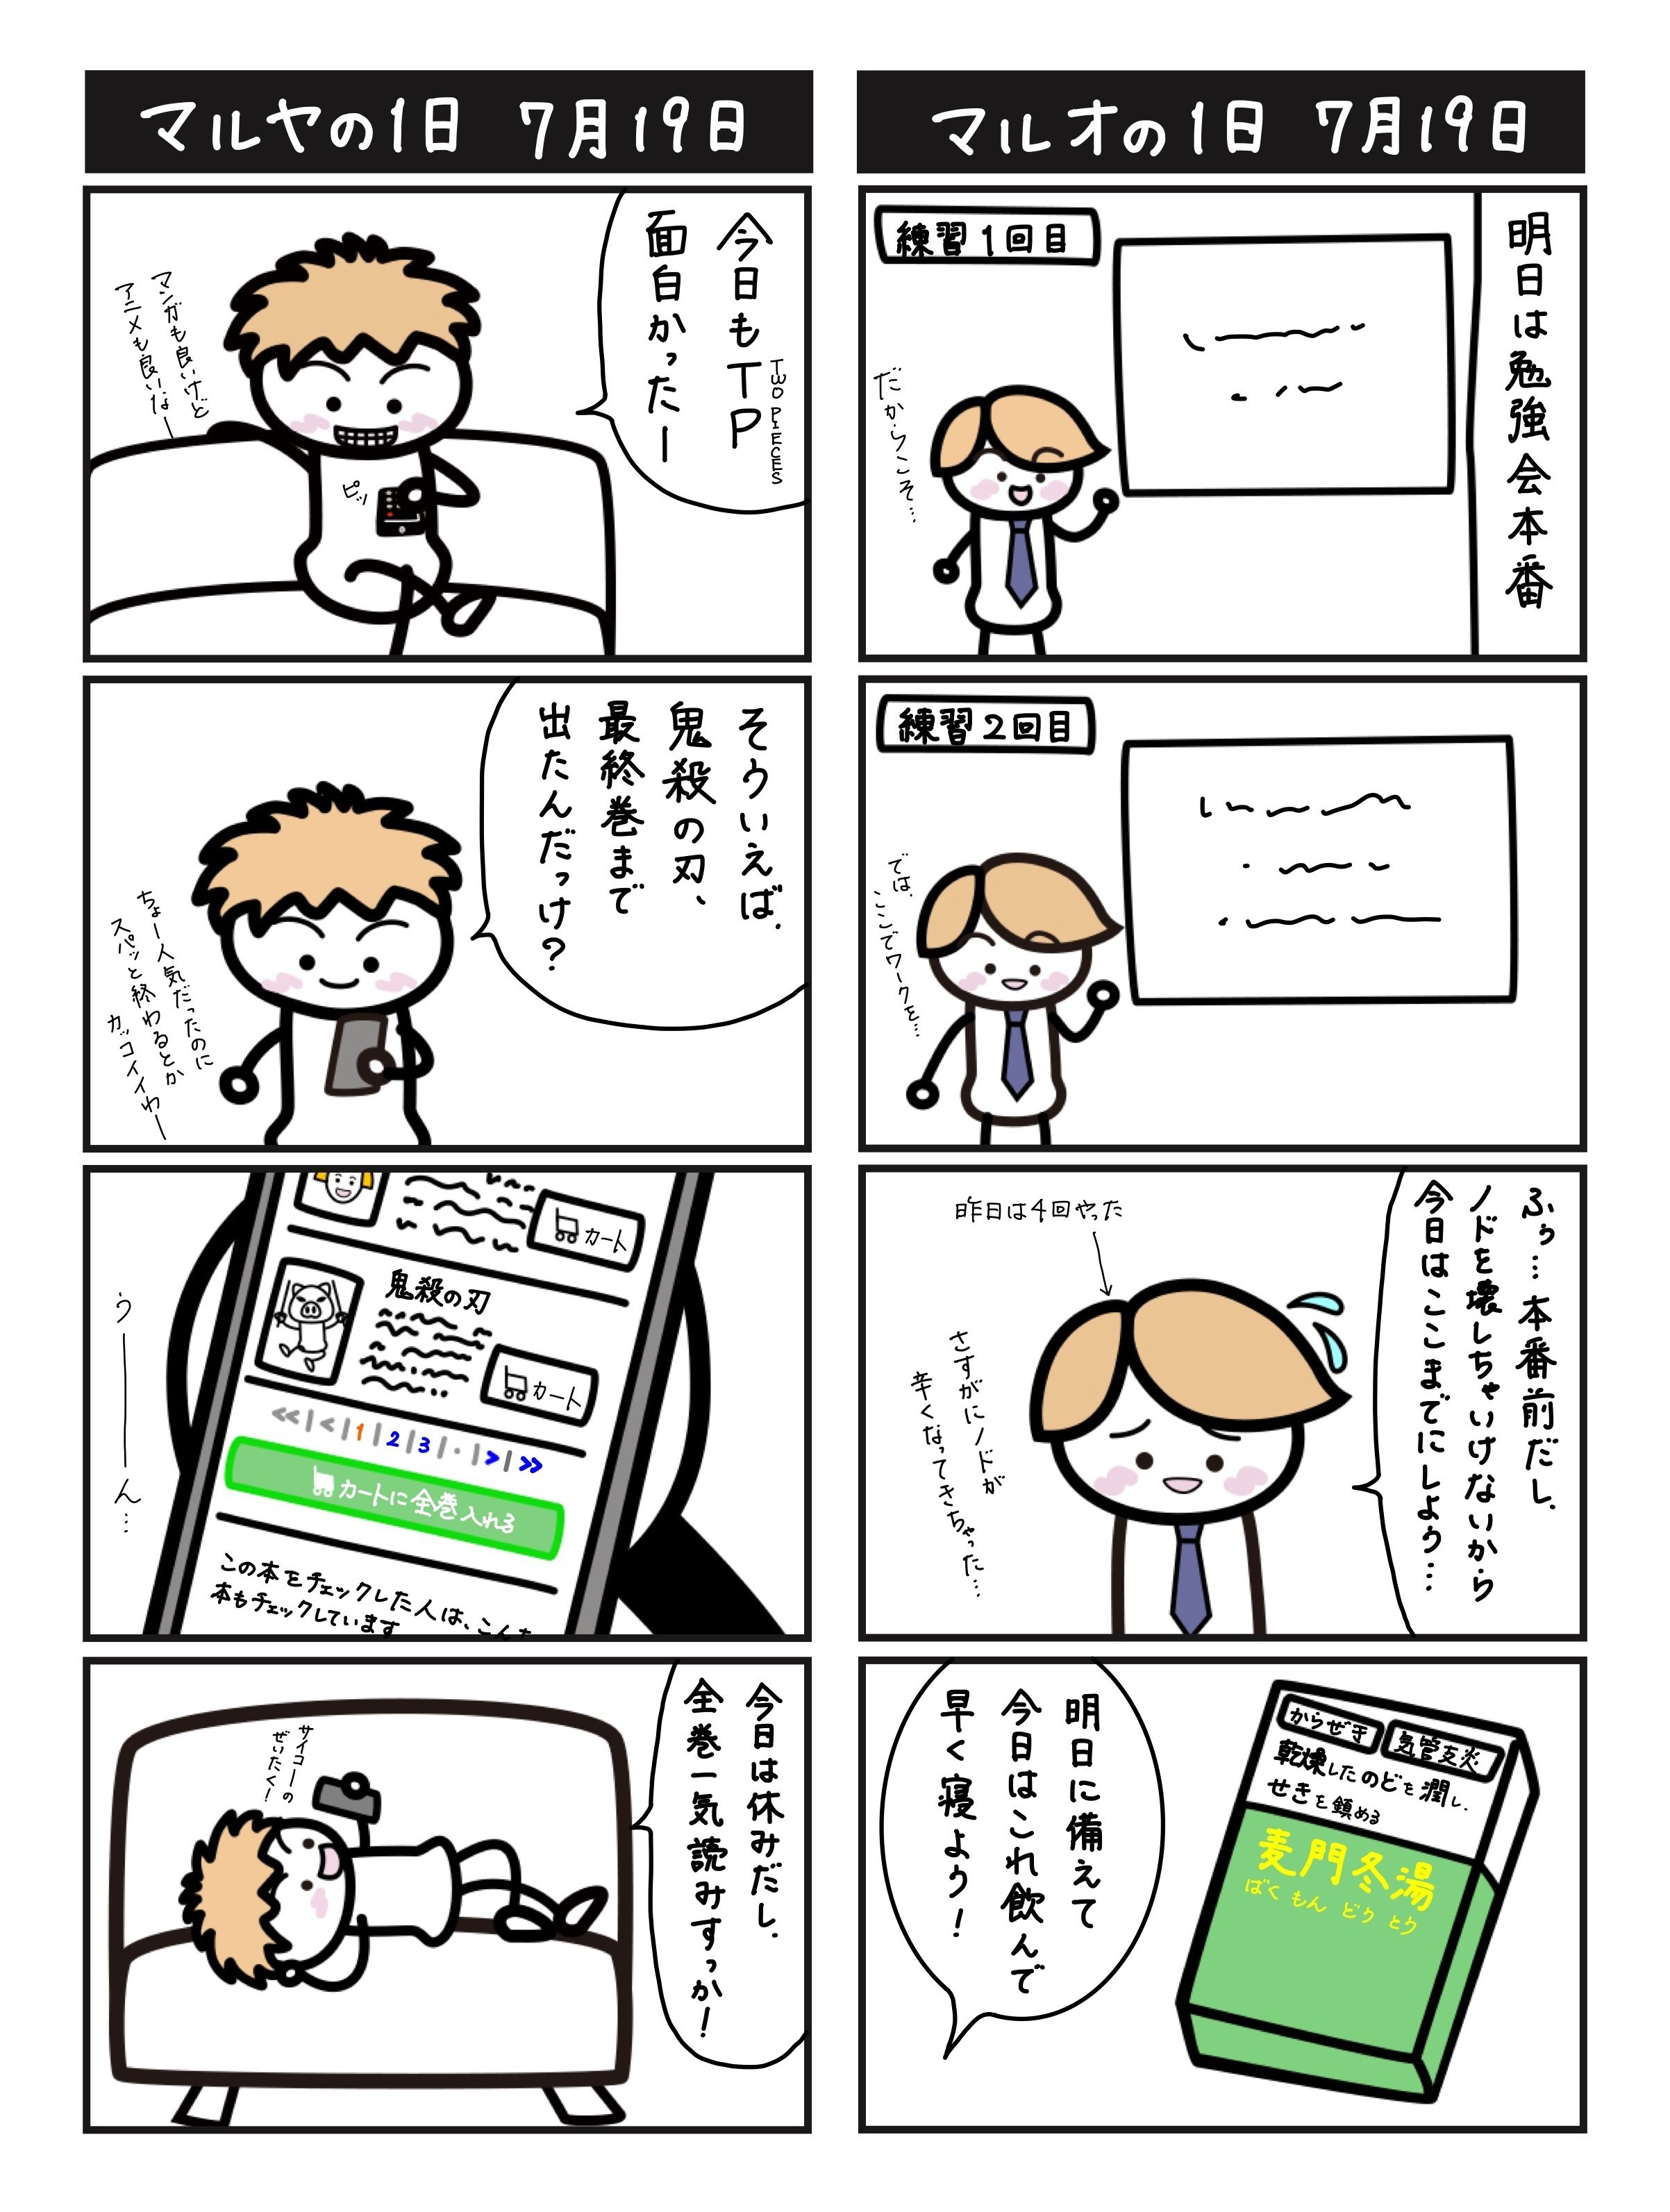 4コマ漫画 コンサル一年生 7月19日 長谷部 由香 個人的に自由に発信するnote Note